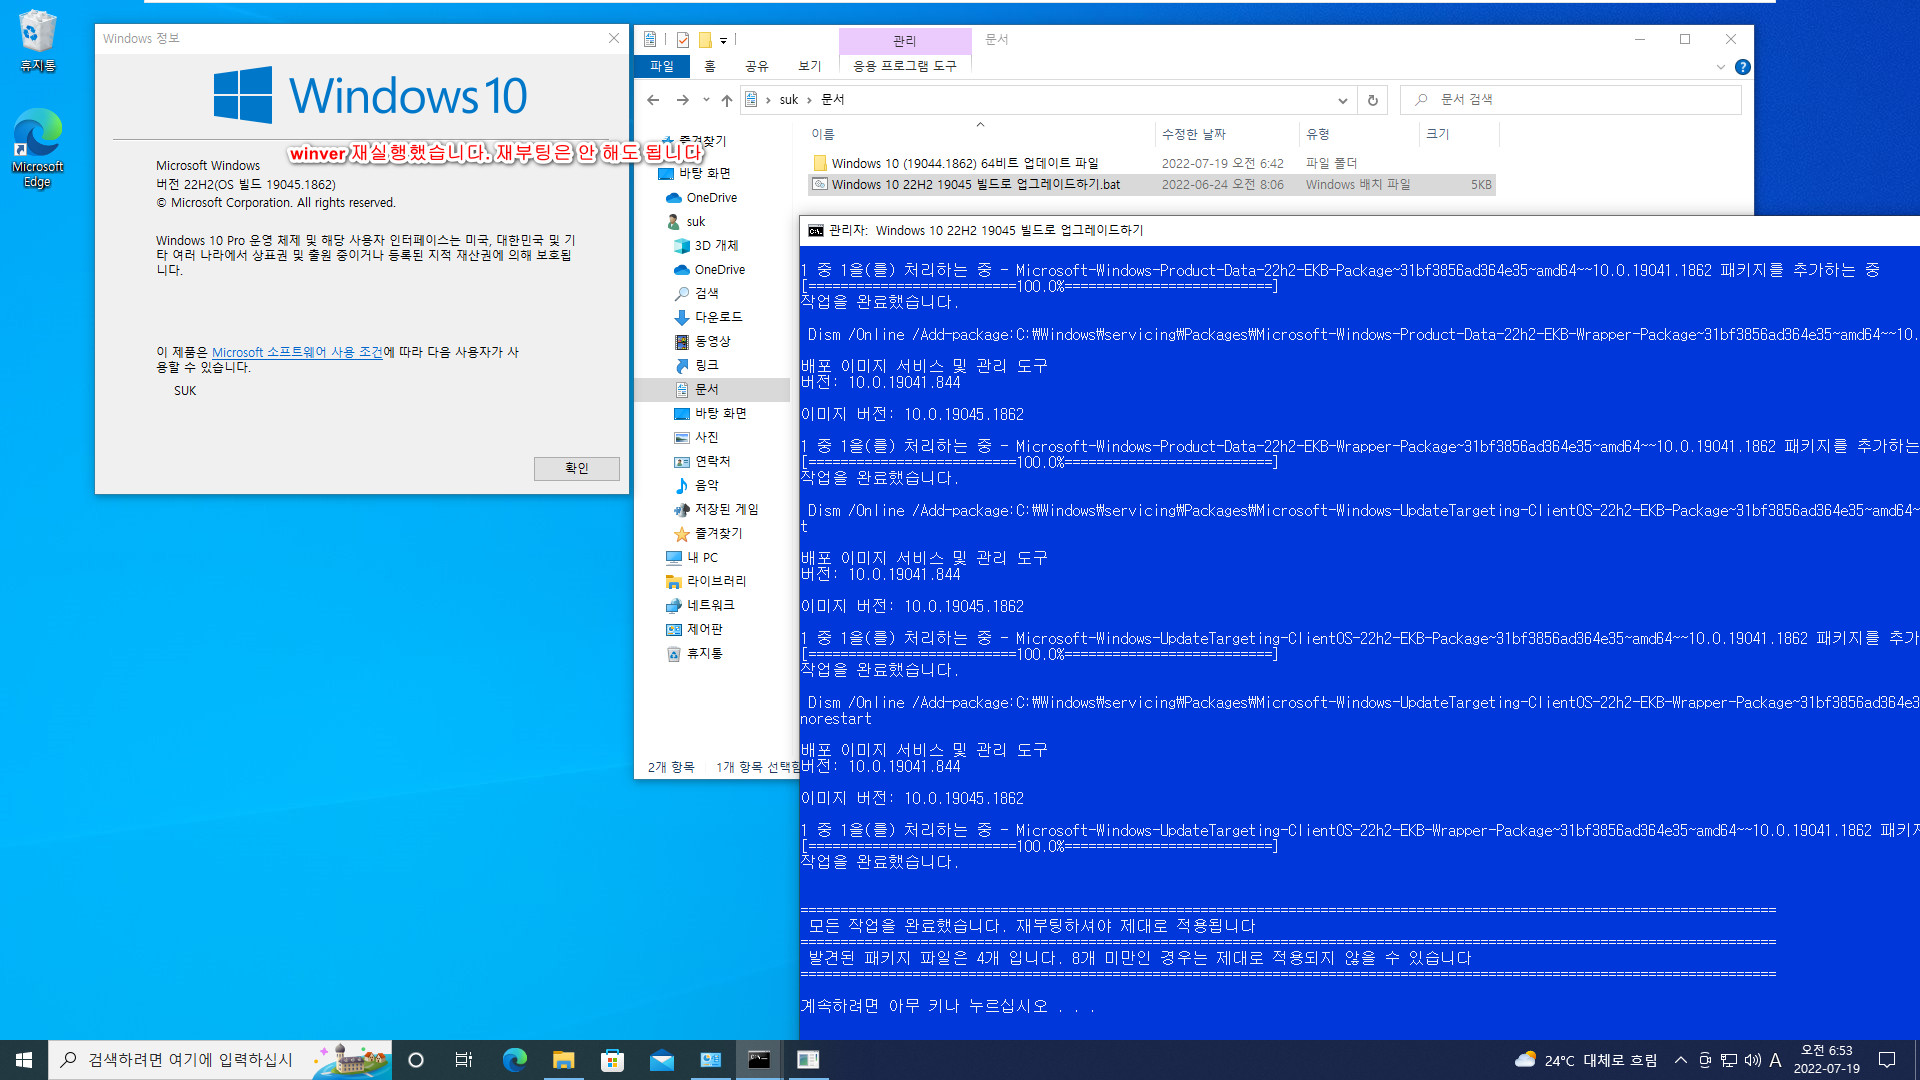 2022-07-19 화요일 - 릴리스 프리뷰 - Windows 10 버전 21H2, 빌드 19044.1862 - 공용 누적 업데이트 KB5015878 - 버전 22H2, 빌드 19045으로 설치 테스트 2022-07-19_065328.jpg